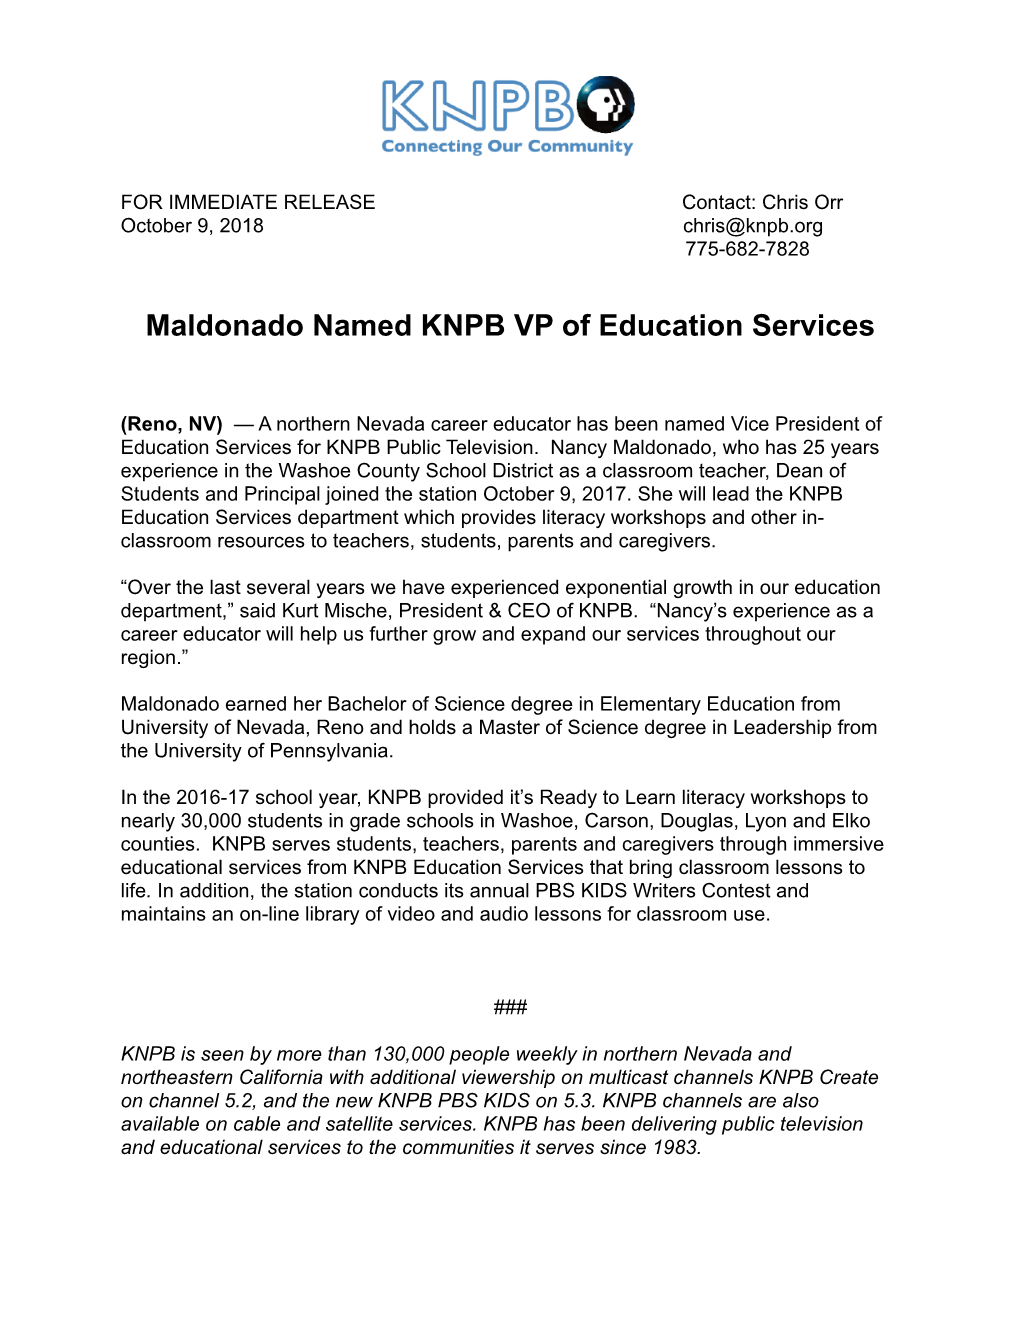 Maldonado Named KNPB VP of Education Services